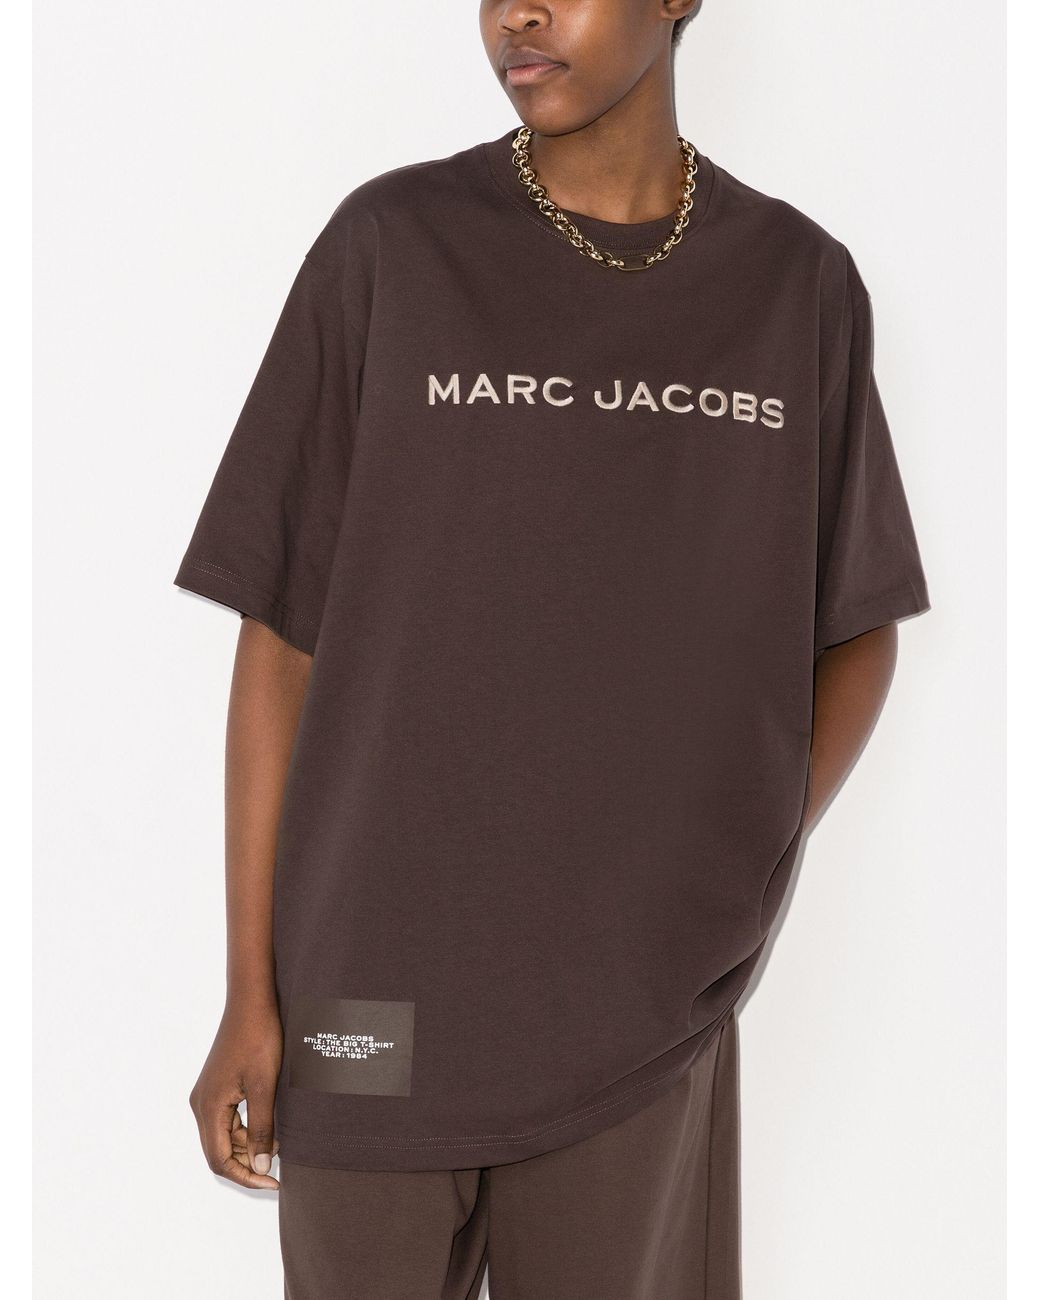 Marc jacobs big t shirt シャツ